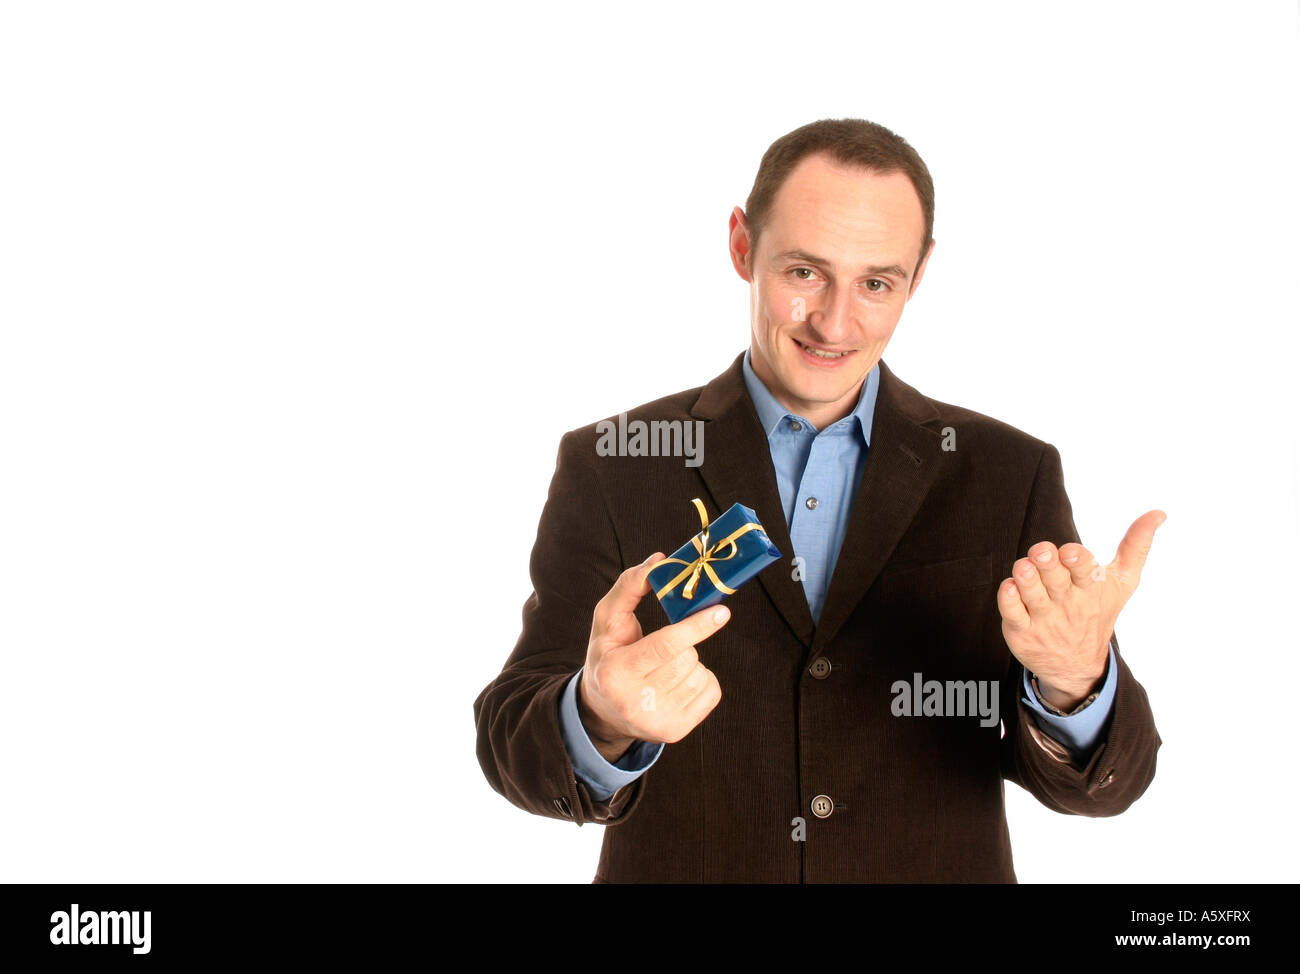 Homme debout avec boîte-cadeau close up portrait of smiling Banque D'Images